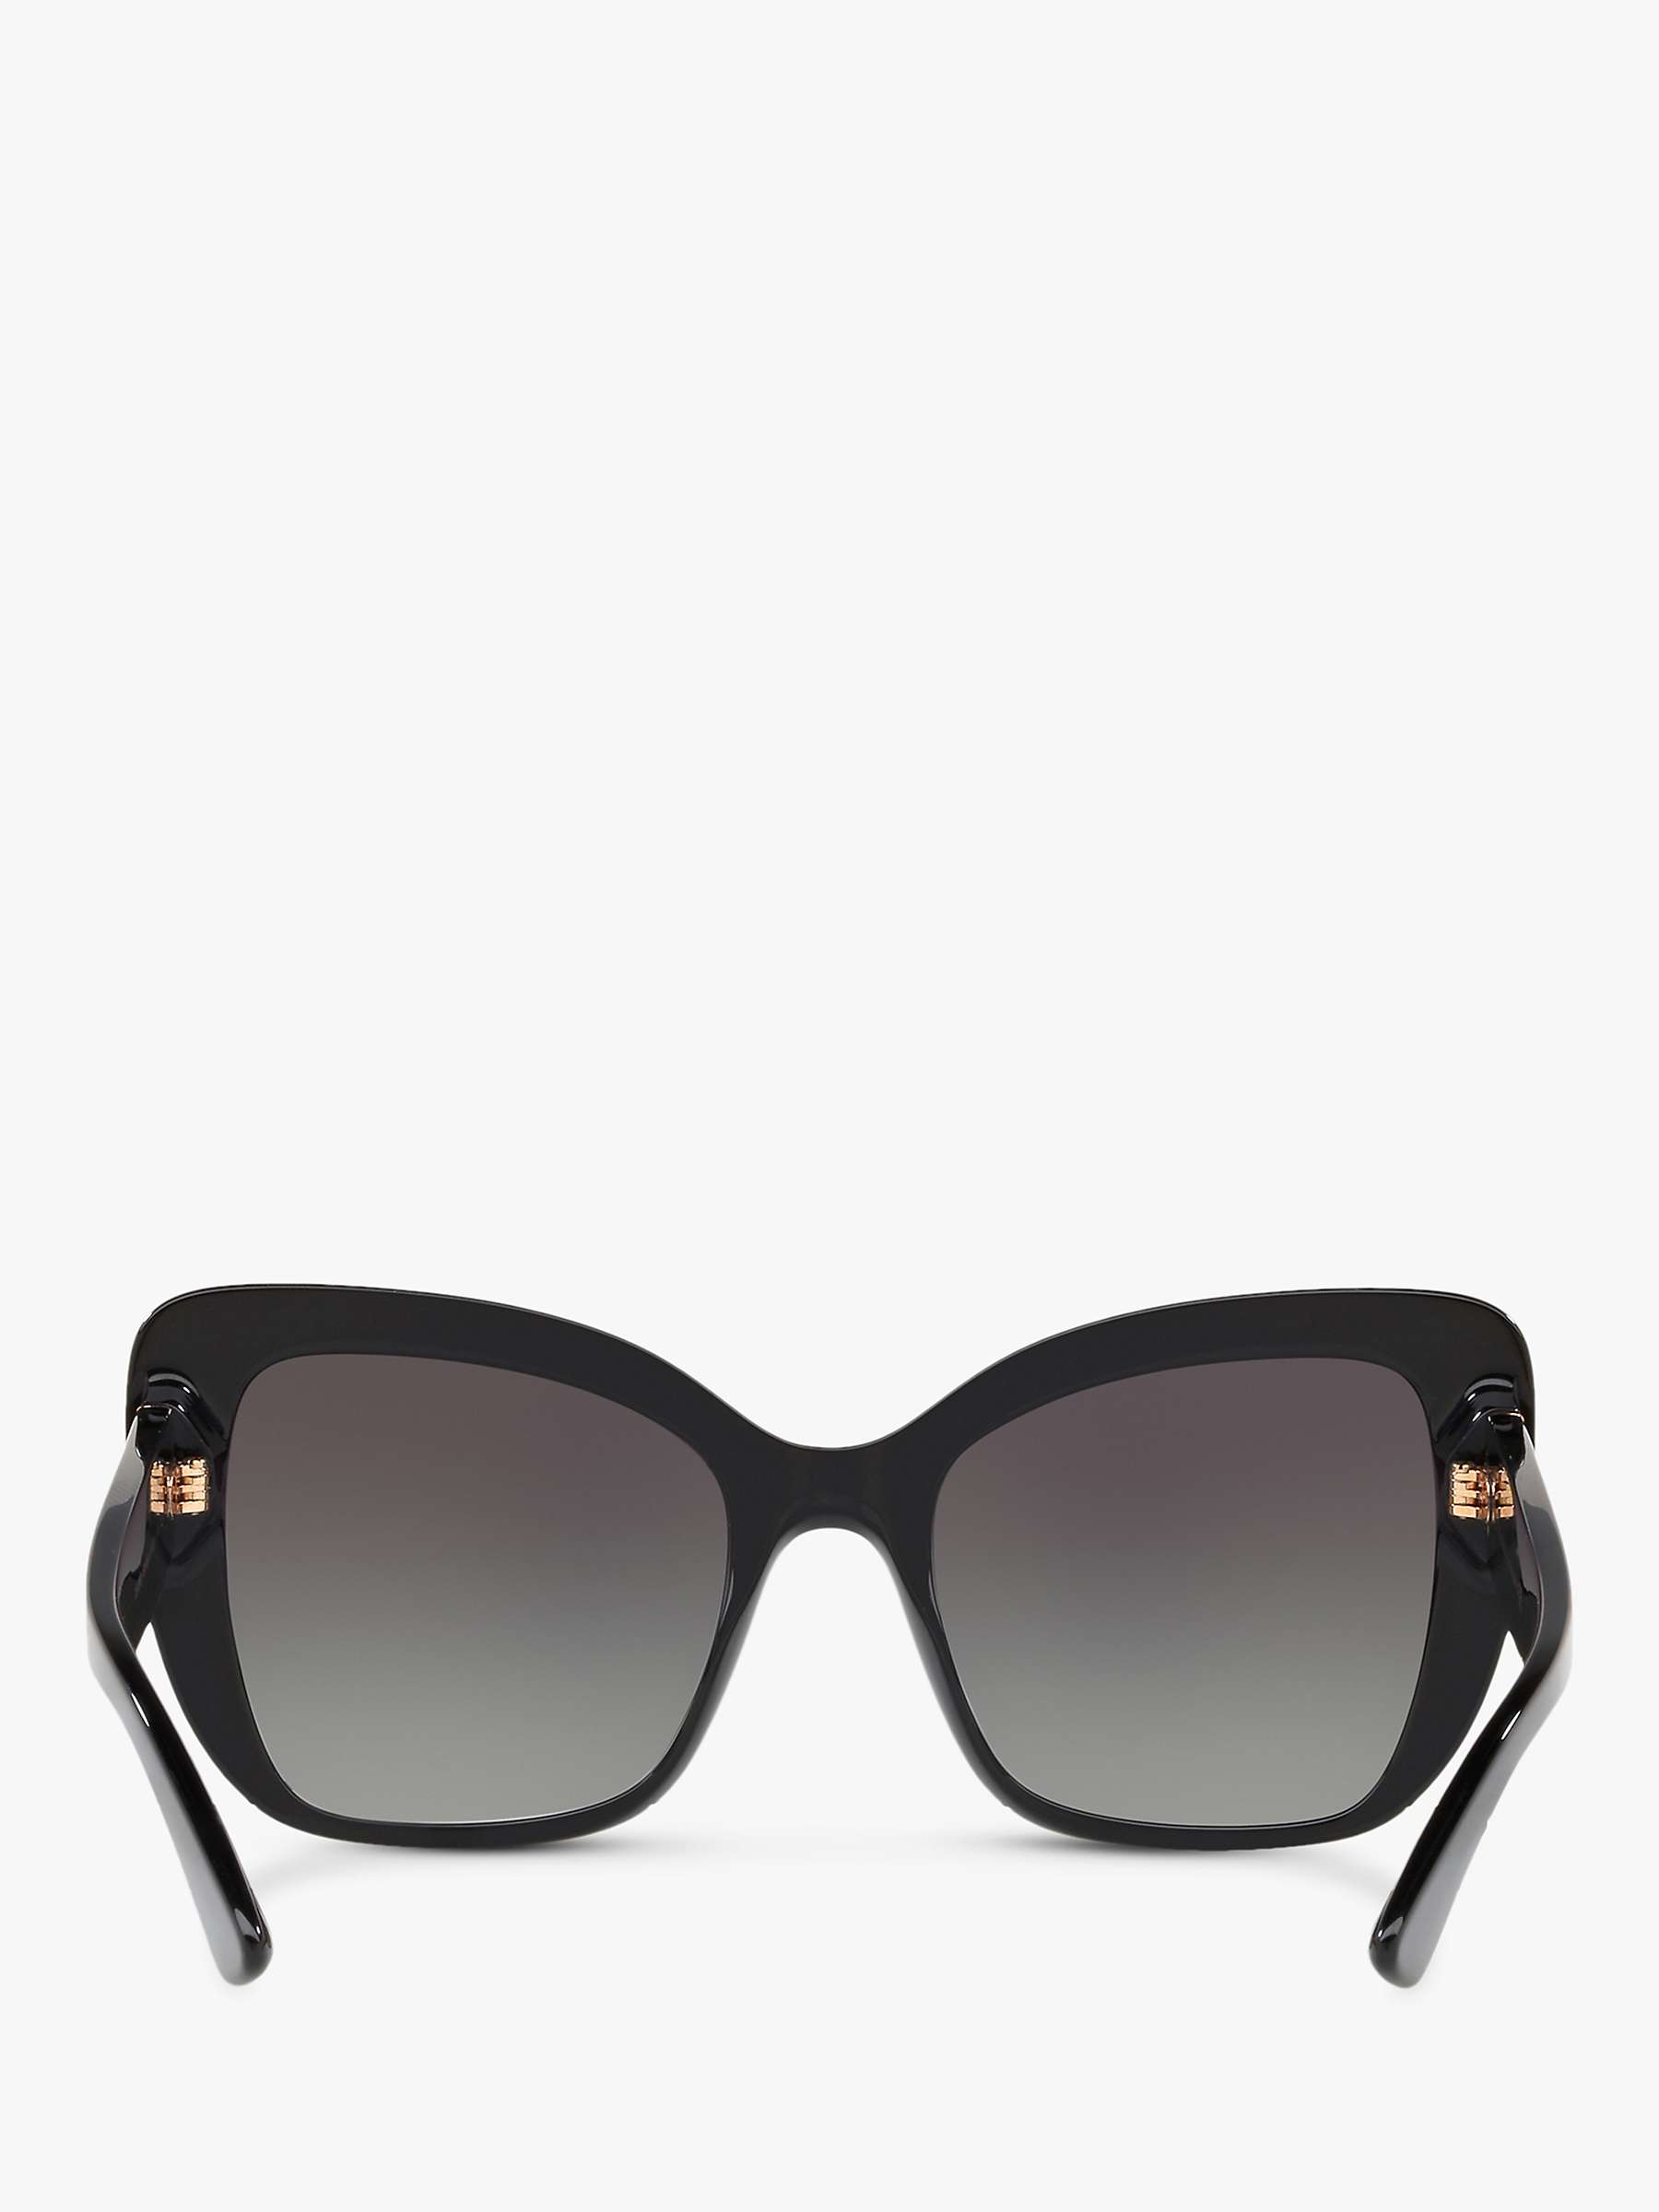 Buy Dolce & Gabbana DG4348 Women's Cat's Eye Sunglasses Online at johnlewis.com